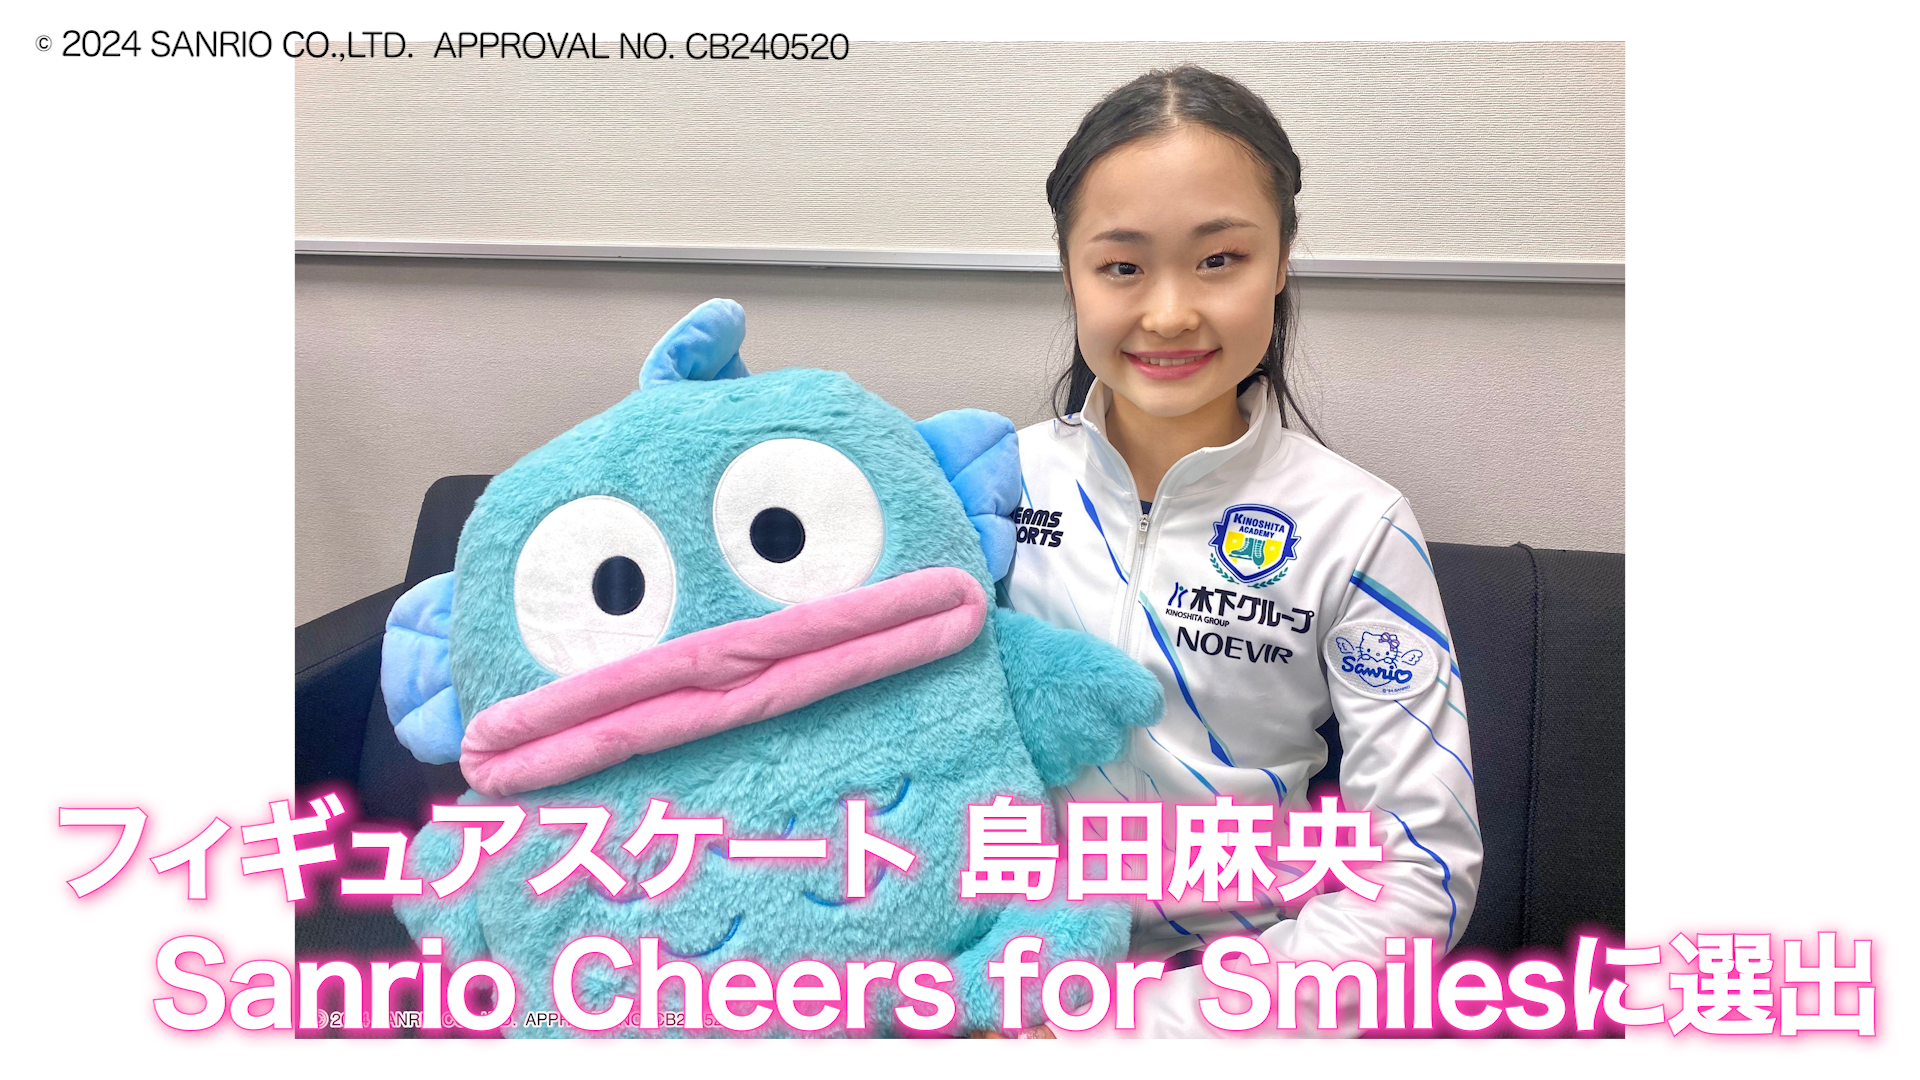 フィギュアスケート島田麻央選手 サンリオの新プロジェクトメンバーに選出